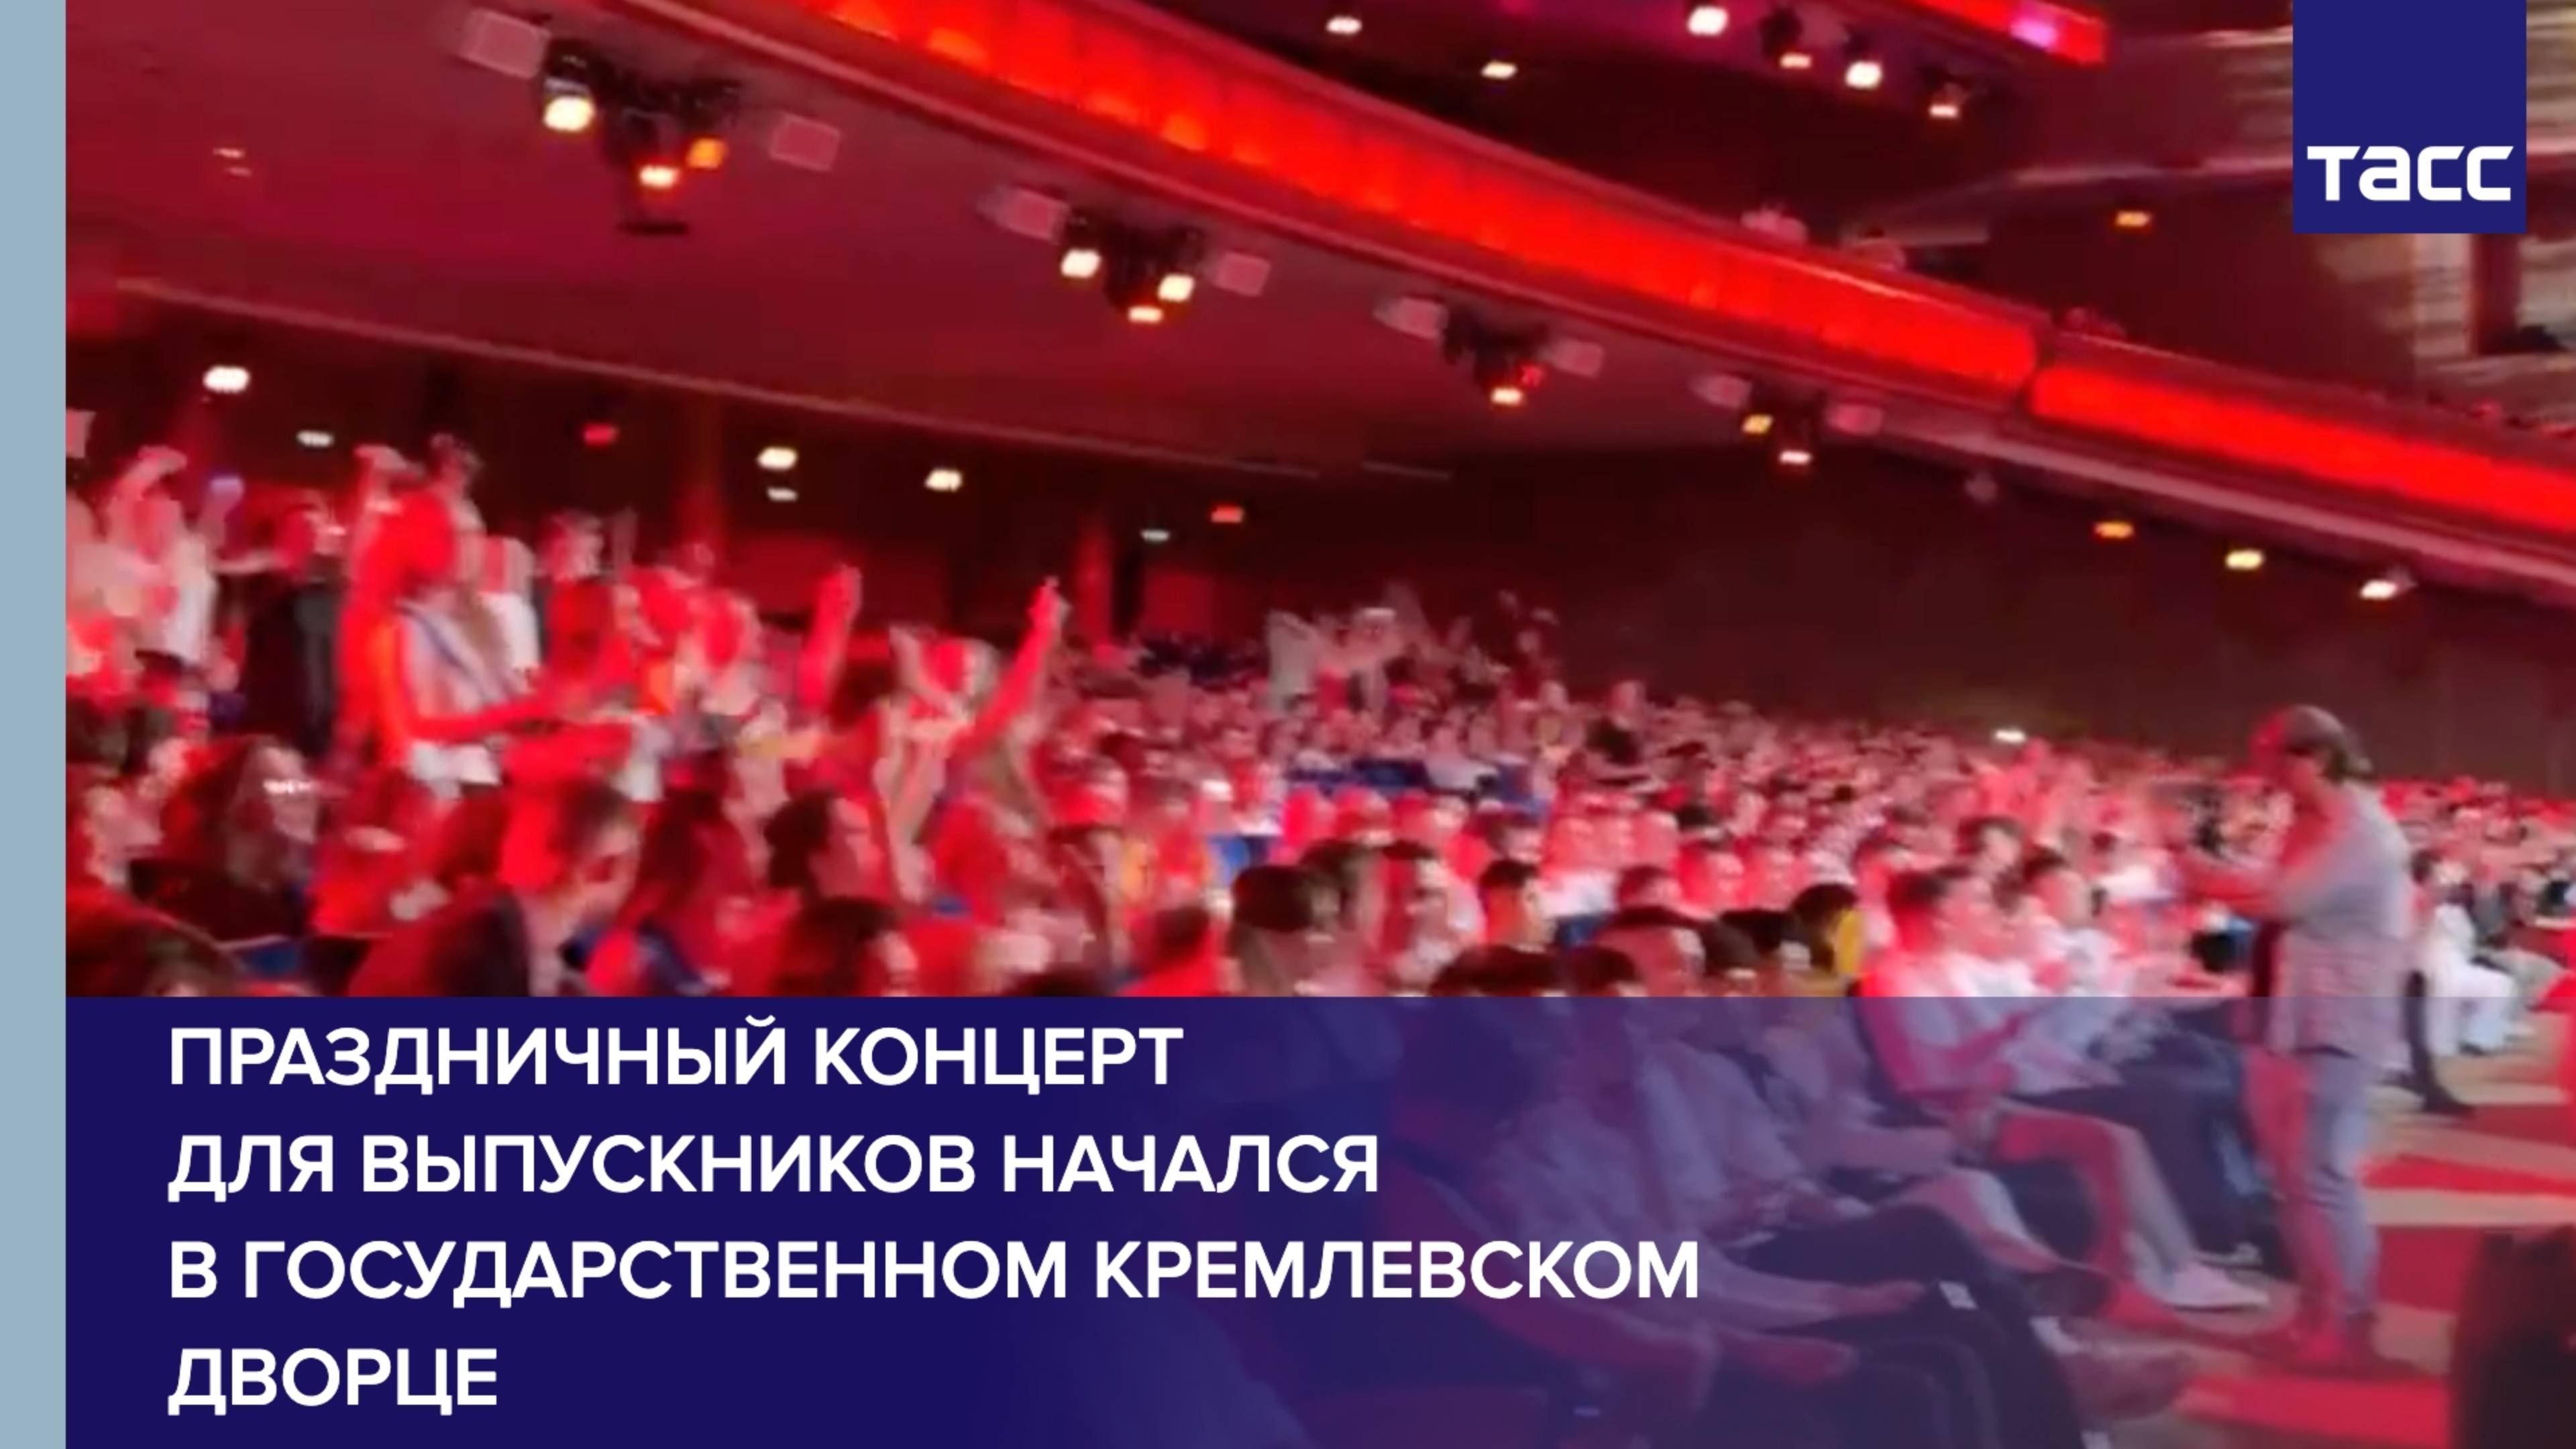 Праздничный концерт для выпускников начался в Государственном Кремлевском дворце